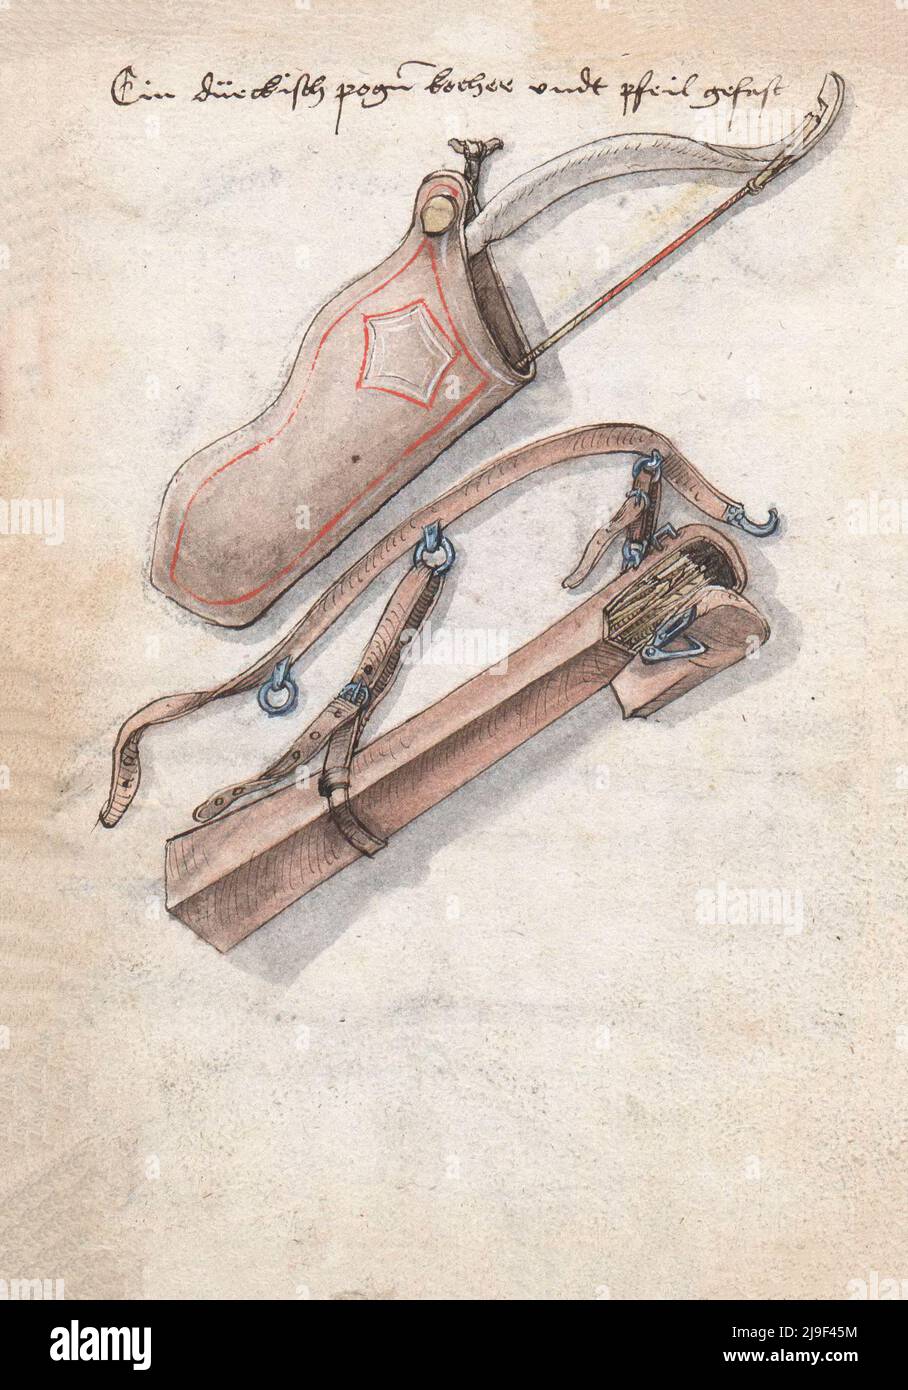 Ilustración medieval de arco con aljador y flechas en quever. Las herramientas de Martin Löffelholz (1505) Löffelholtz Codex. Ilustraciones y descripciones Foto de stock